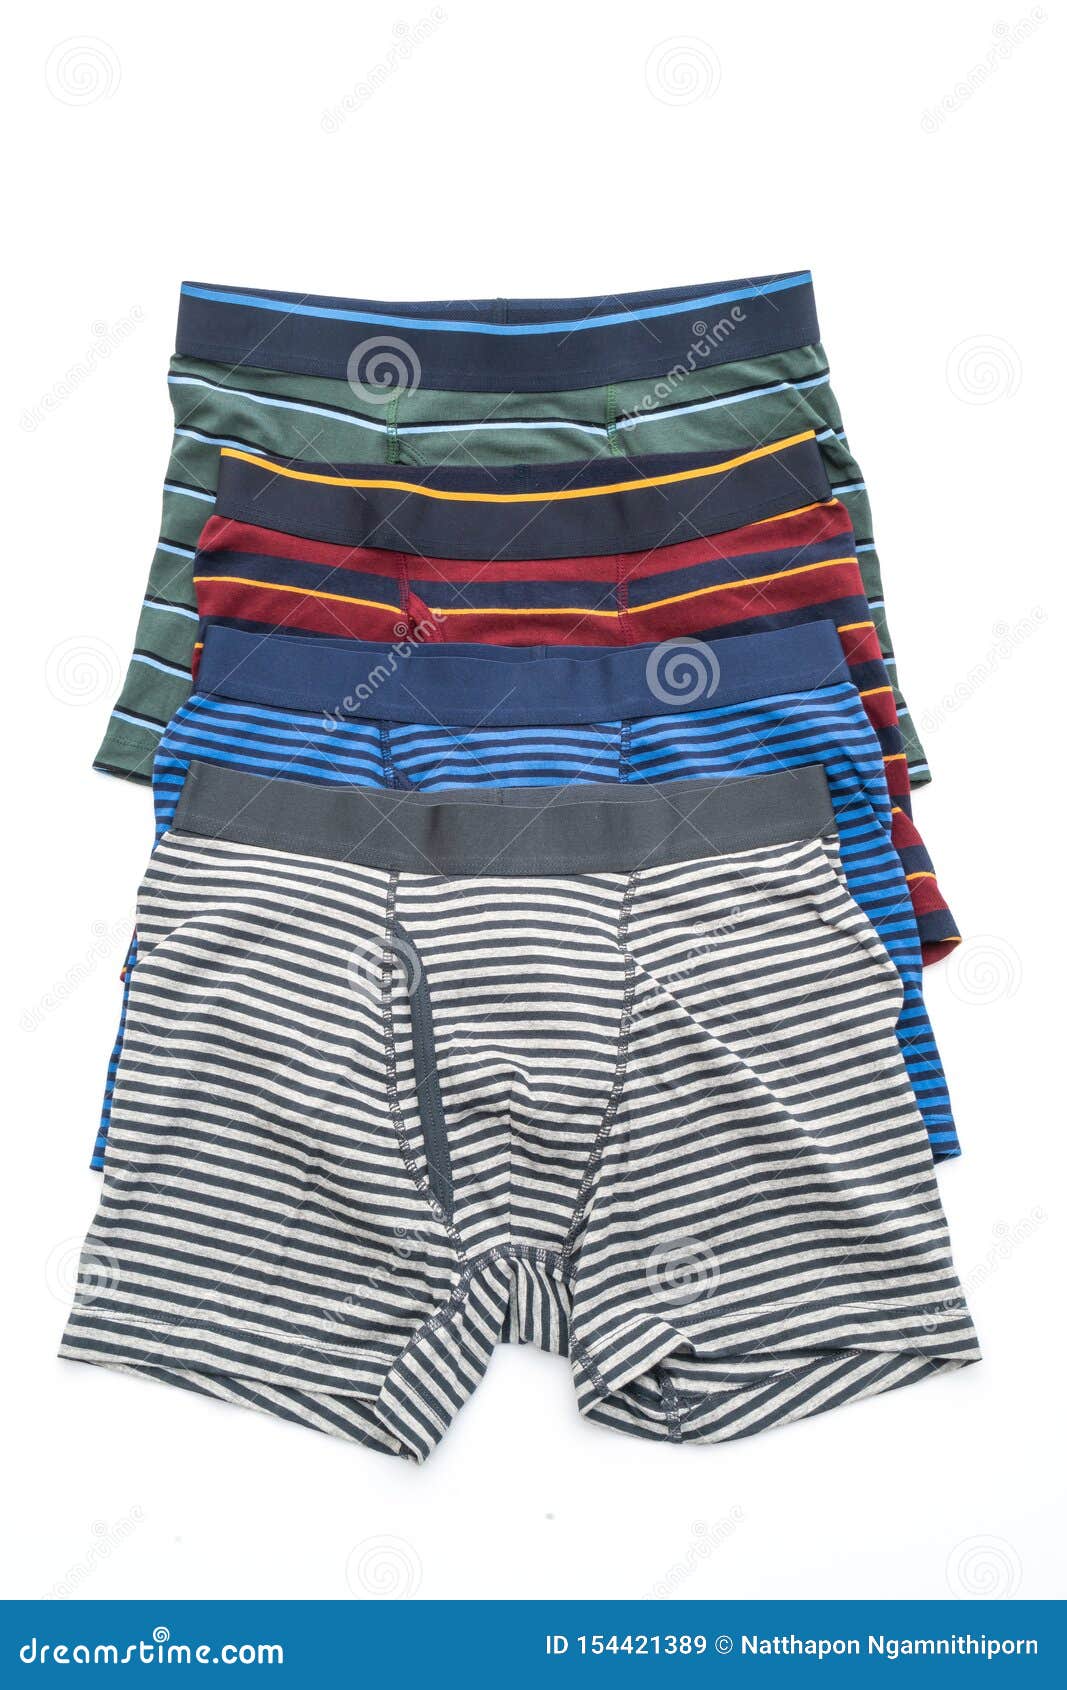 Striped men underwear stock image. Image of shorts, panties - 154421389